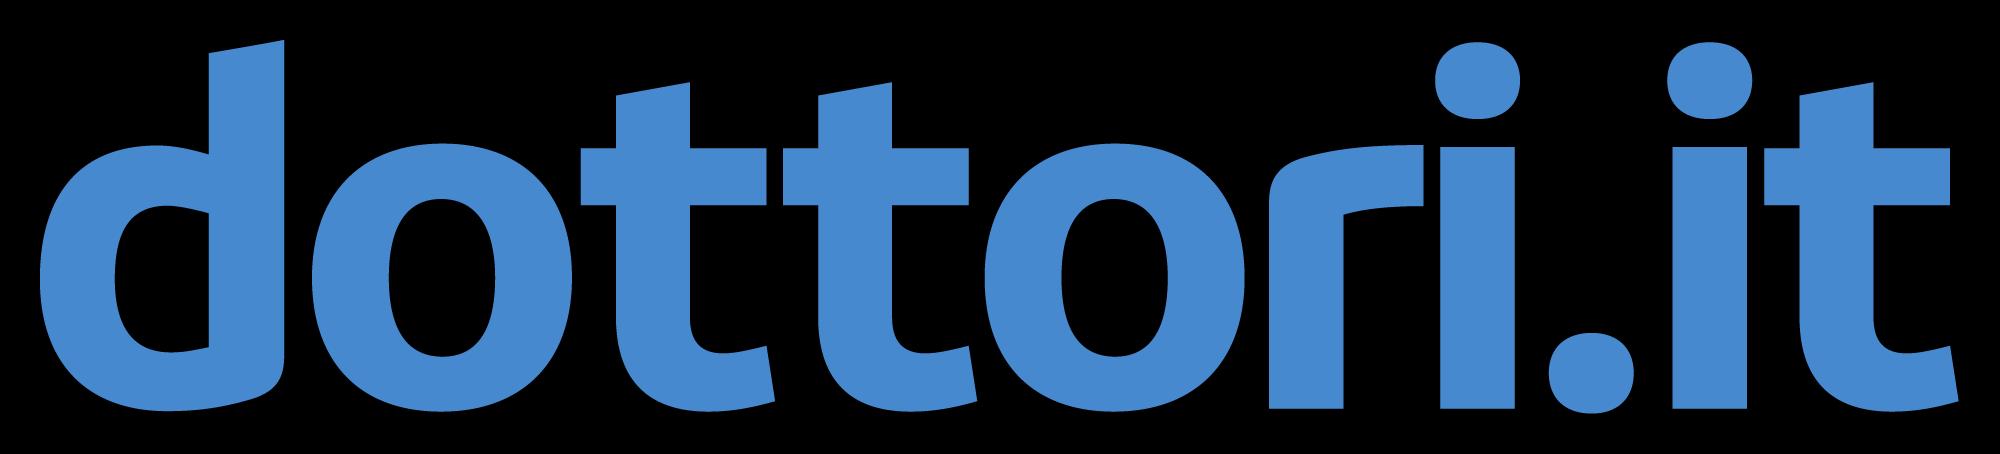 Dottori.it_logo